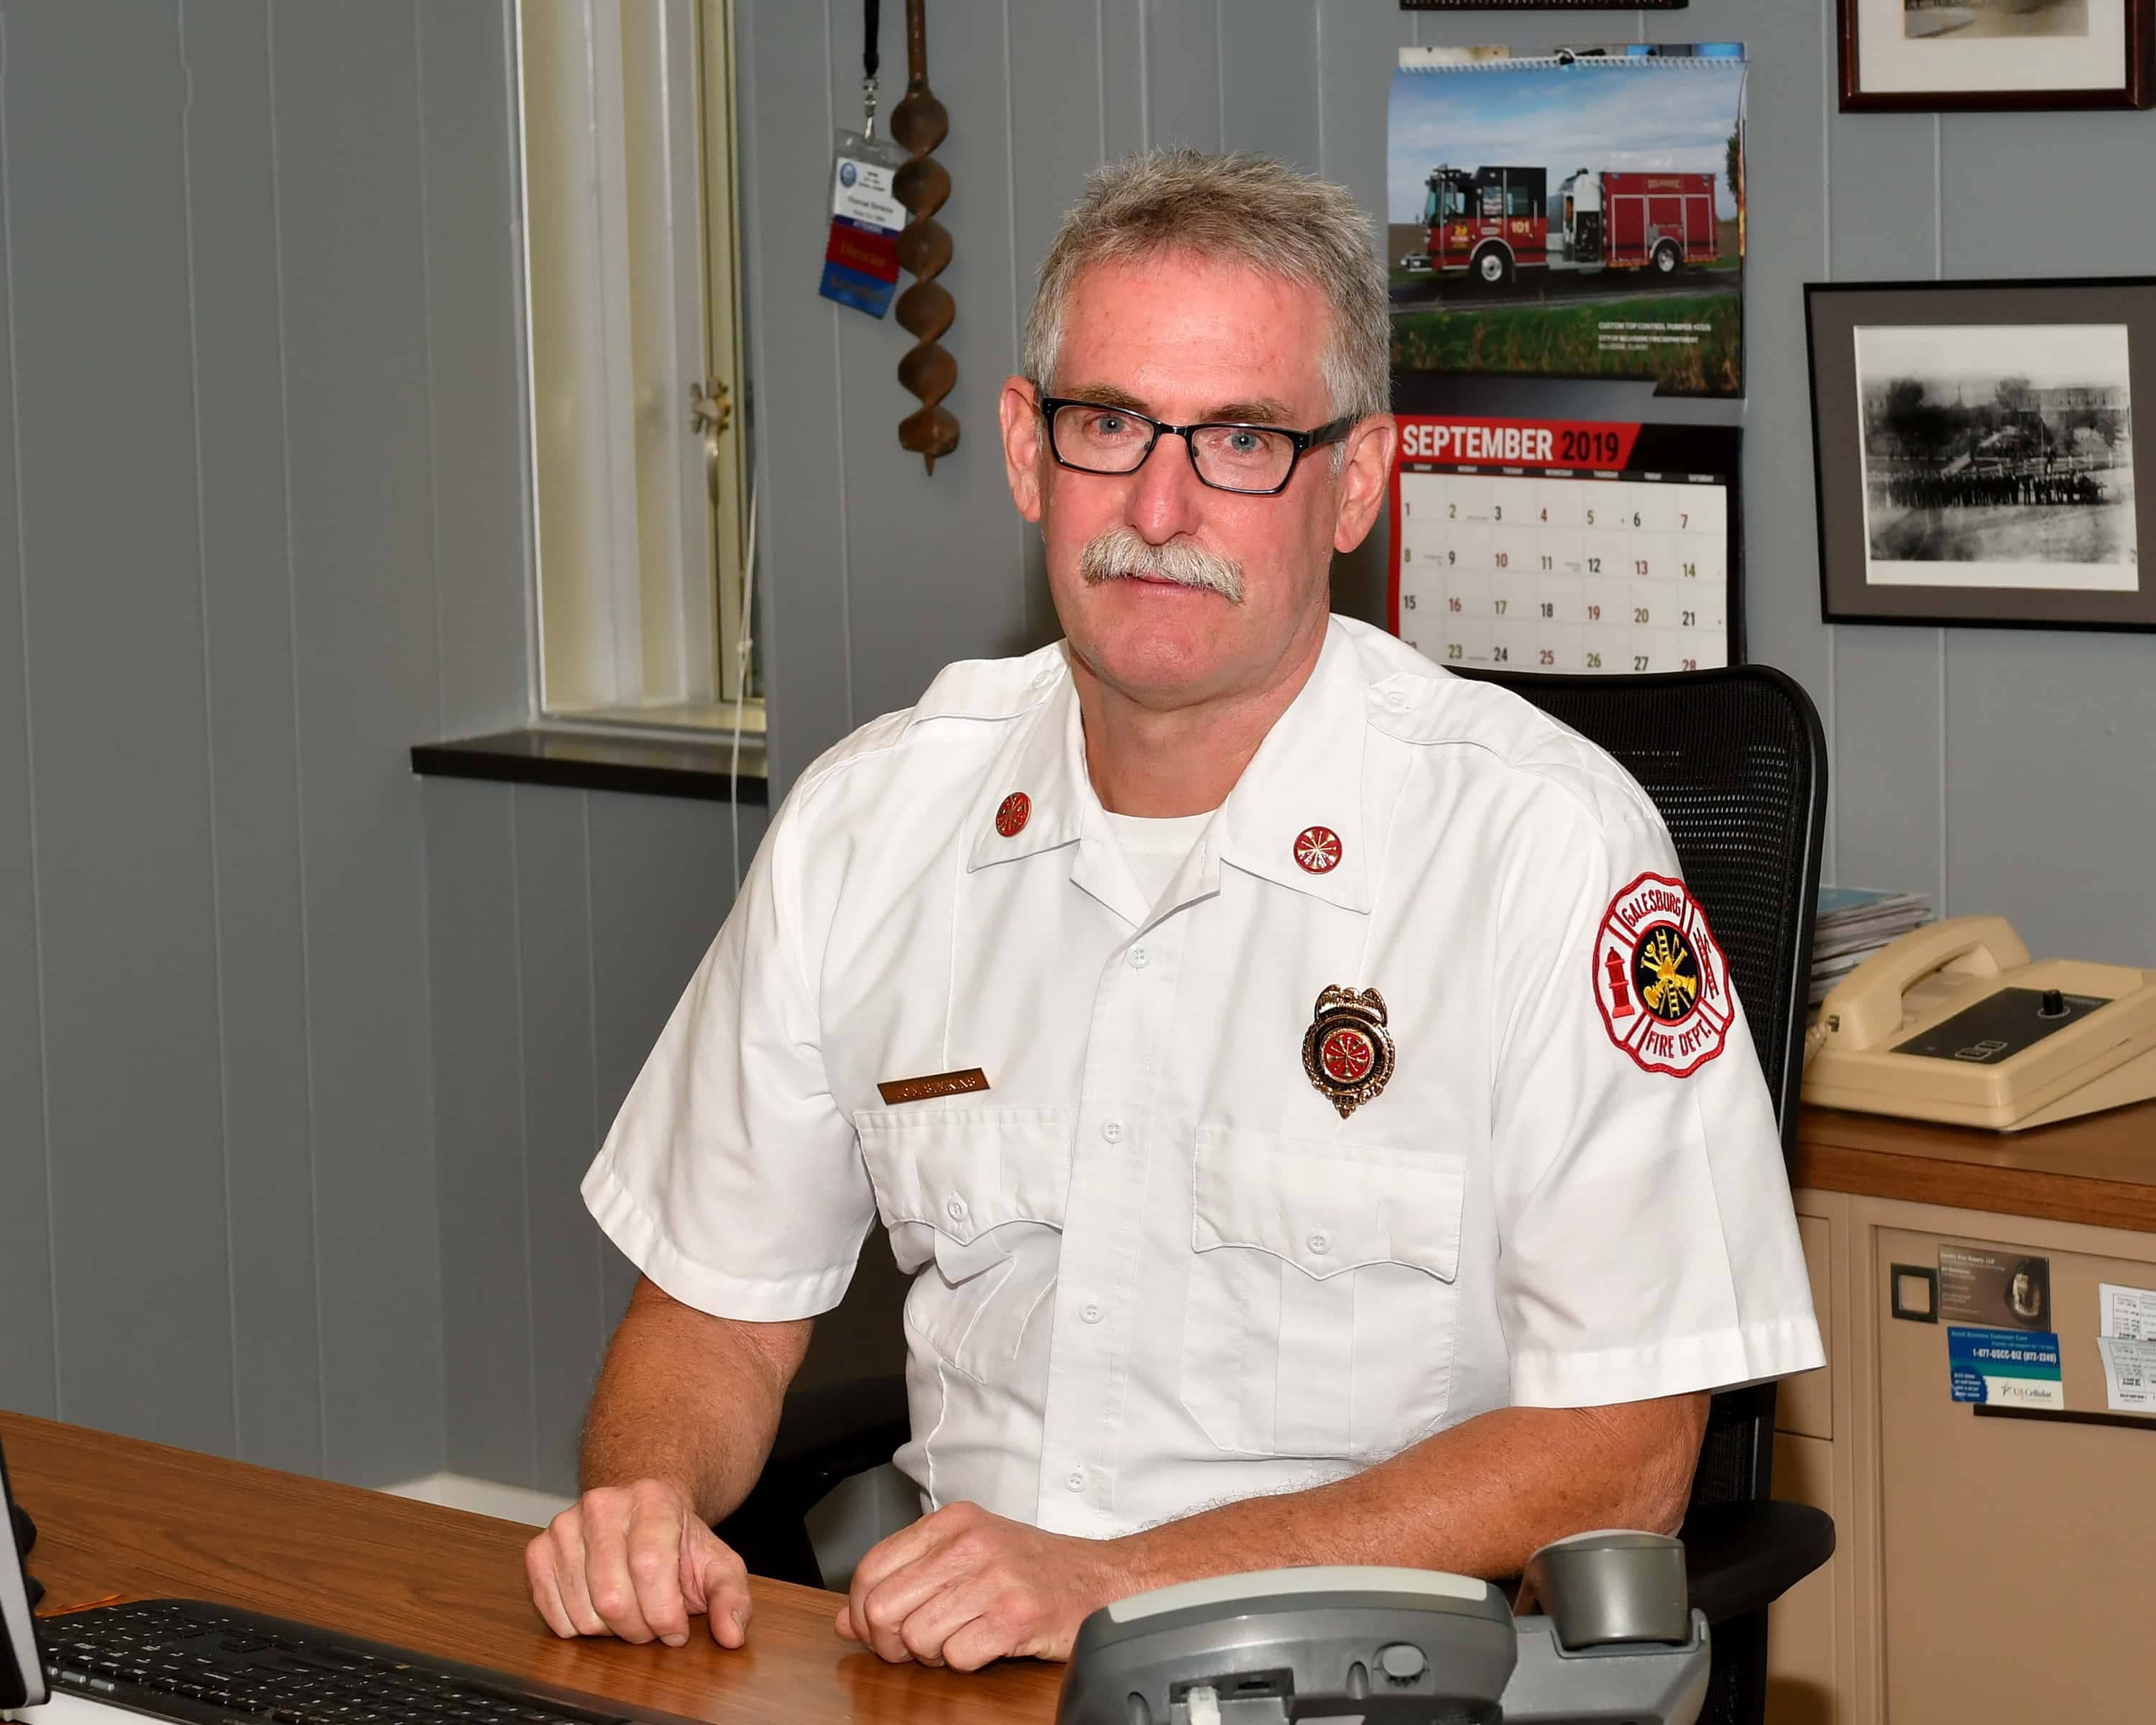 Galesburg Fire Chief Tom Simkins